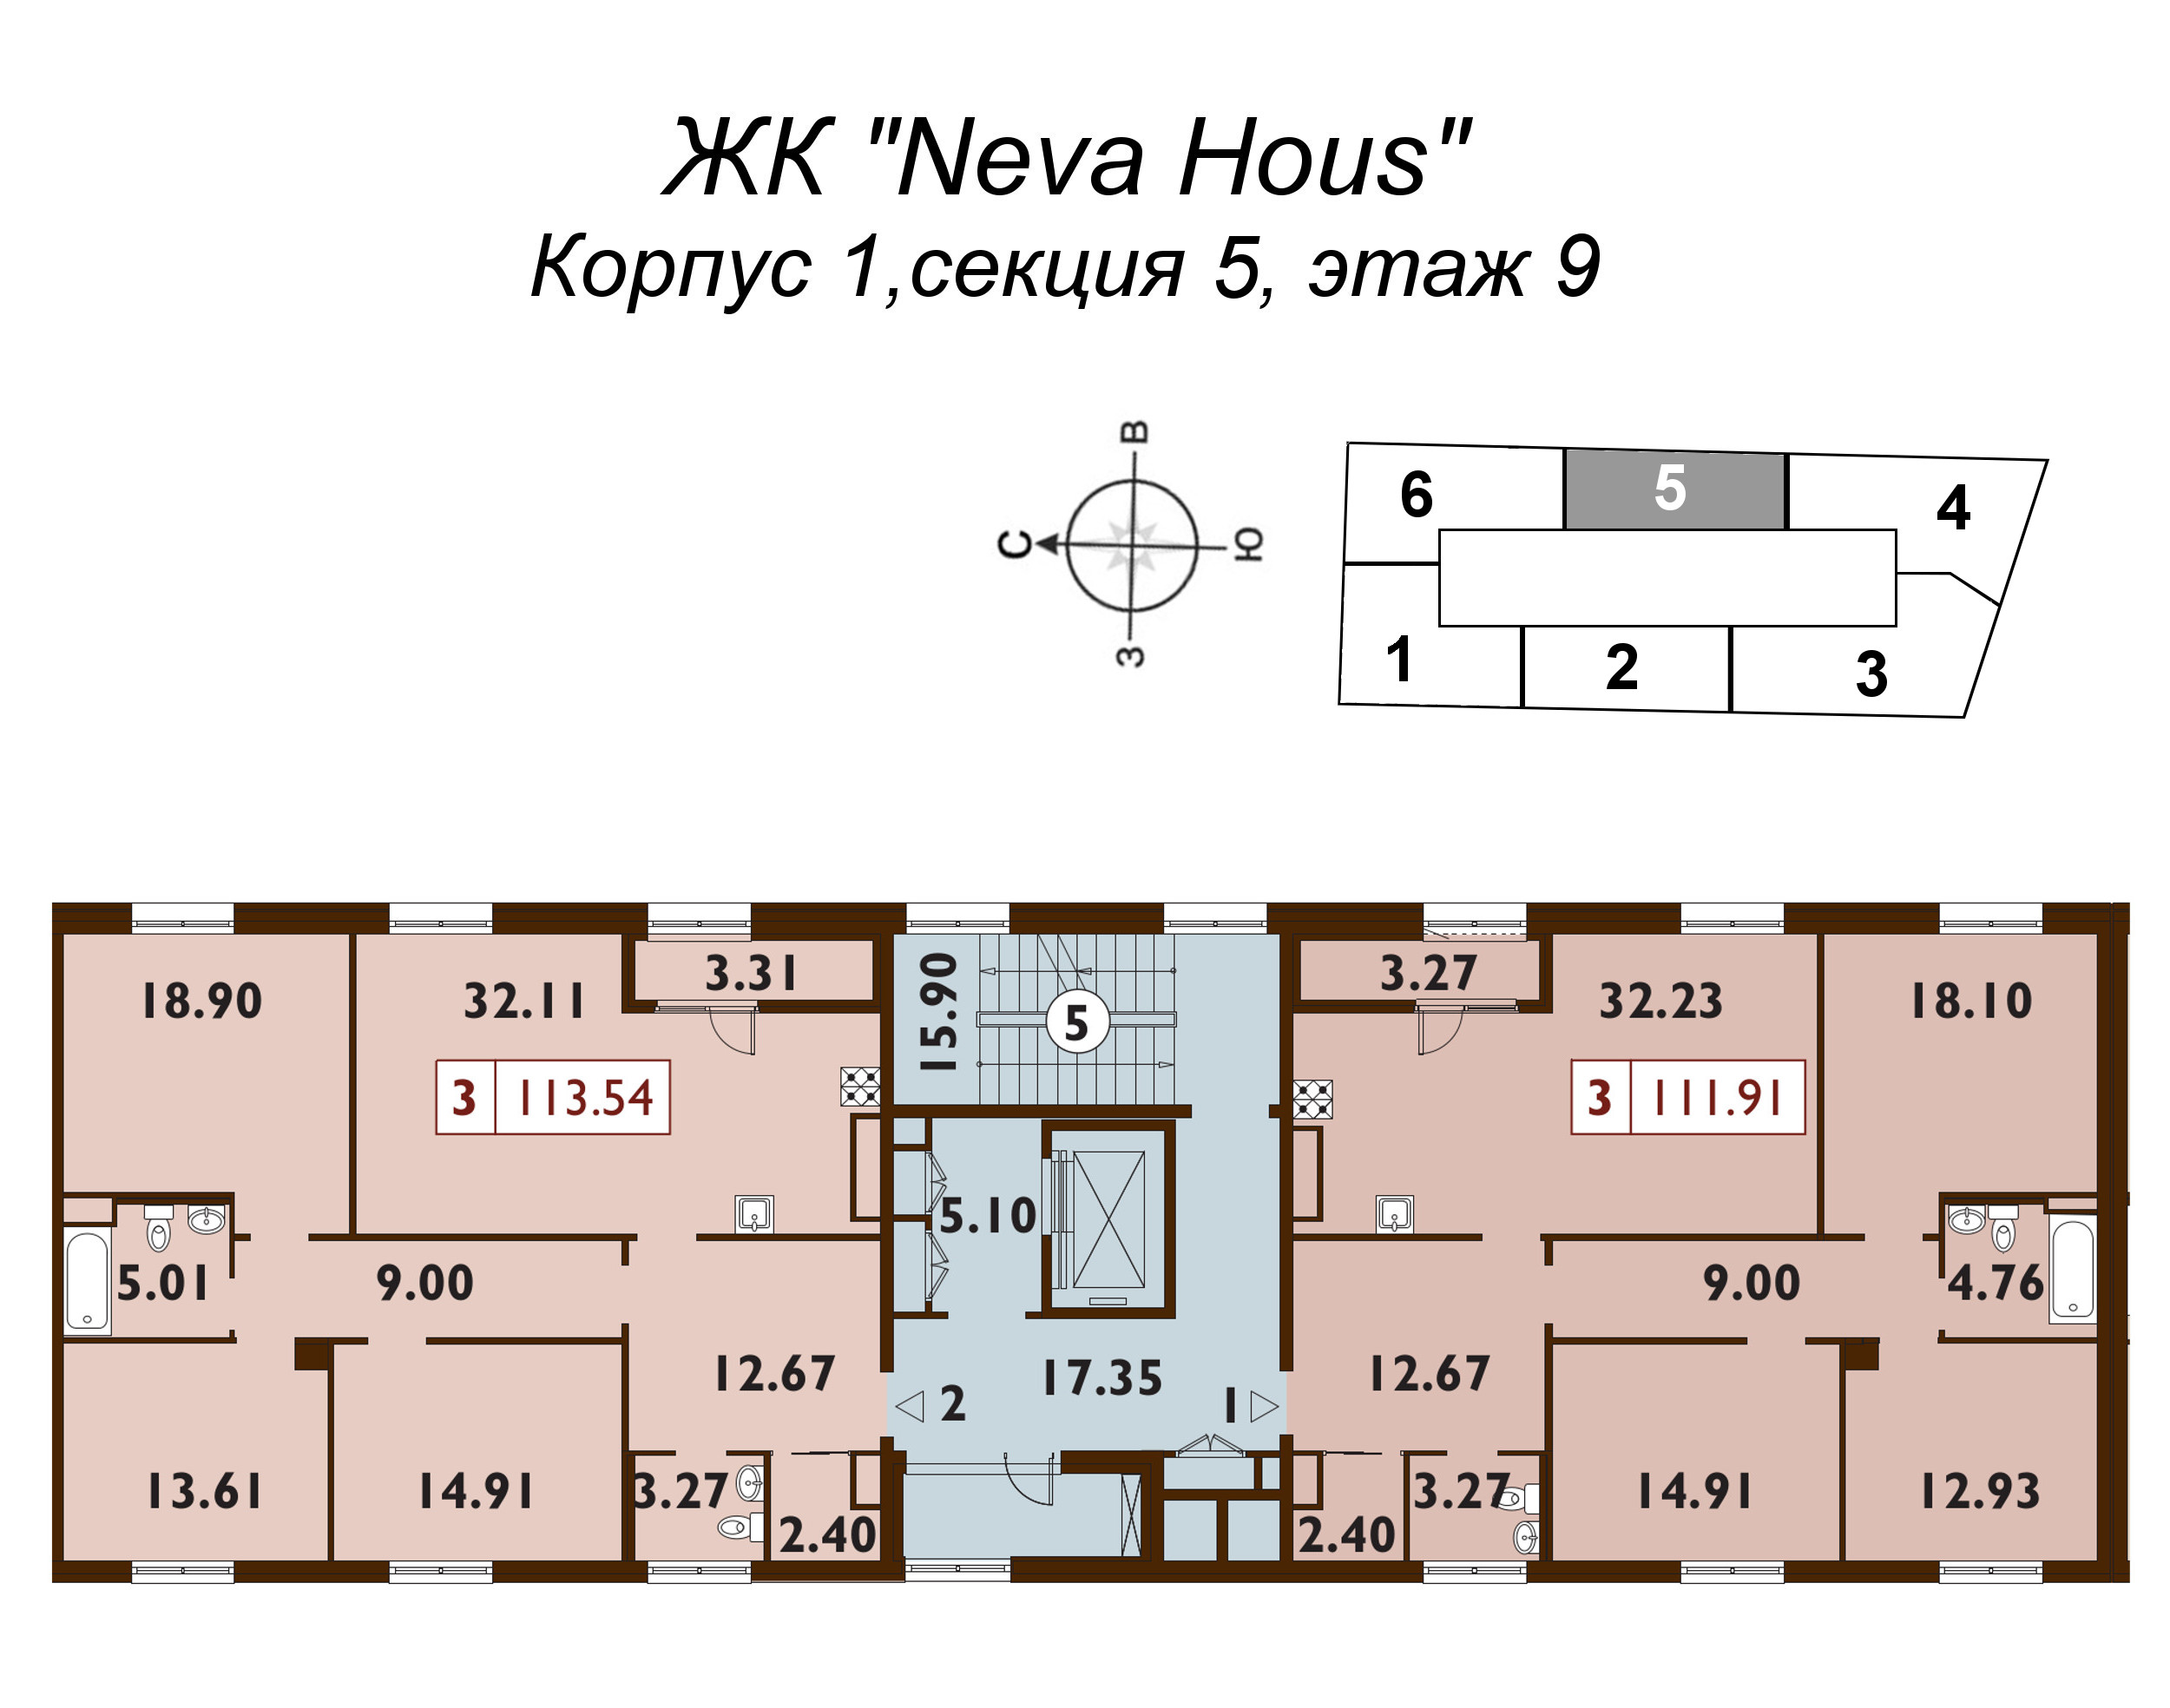 4-комнатная (Евро) квартира, 114 м² в ЖК "Neva Haus" - планировка этажа